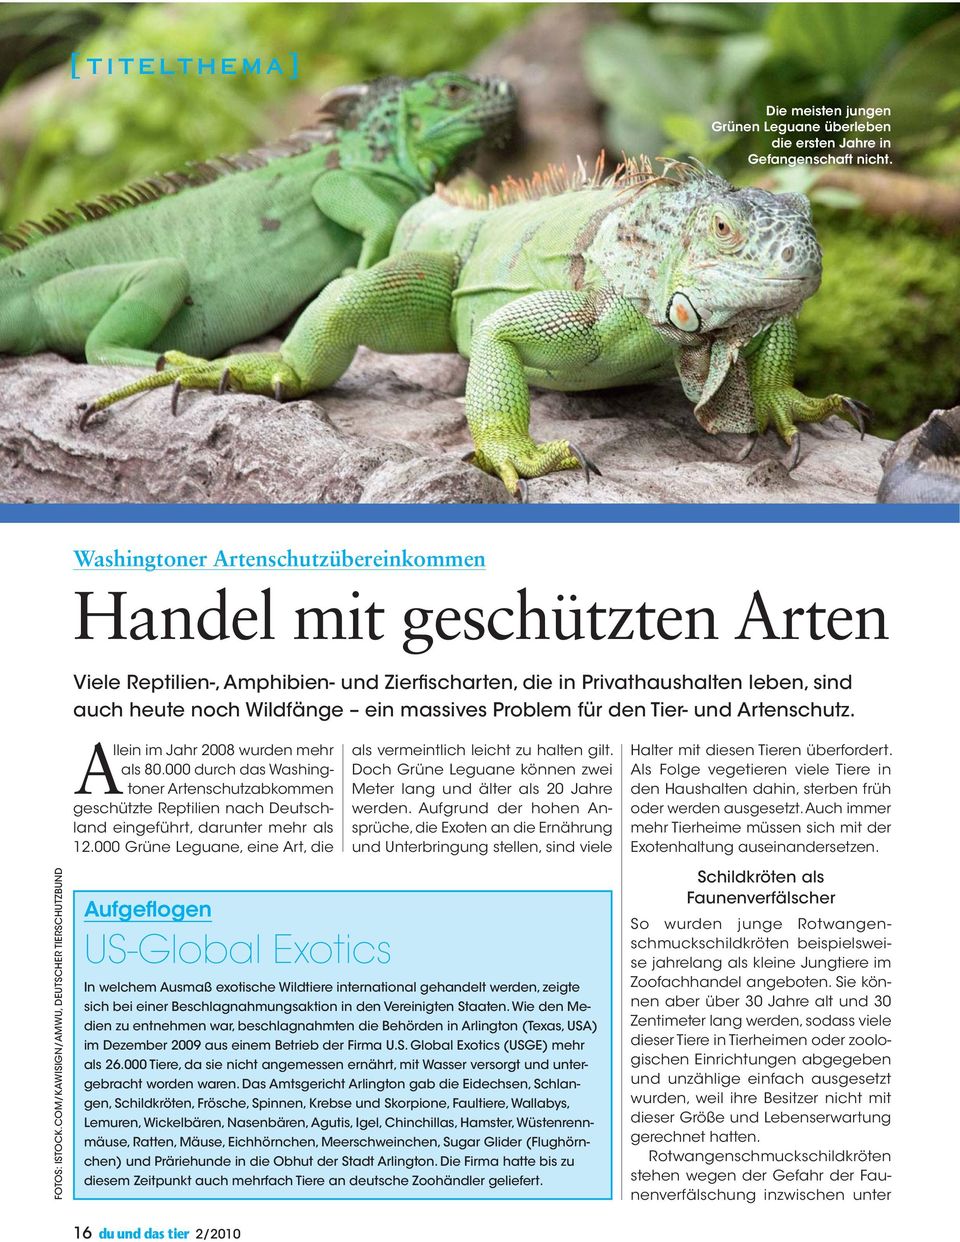 für den Tier- und Artenschutz. Allein im Jahr 2008 wurden mehr als 80.000 durch das Washingtoner Artenschutzabkommen geschützte Reptilien nach Deutschland eingeführt, darunter mehr als 12.